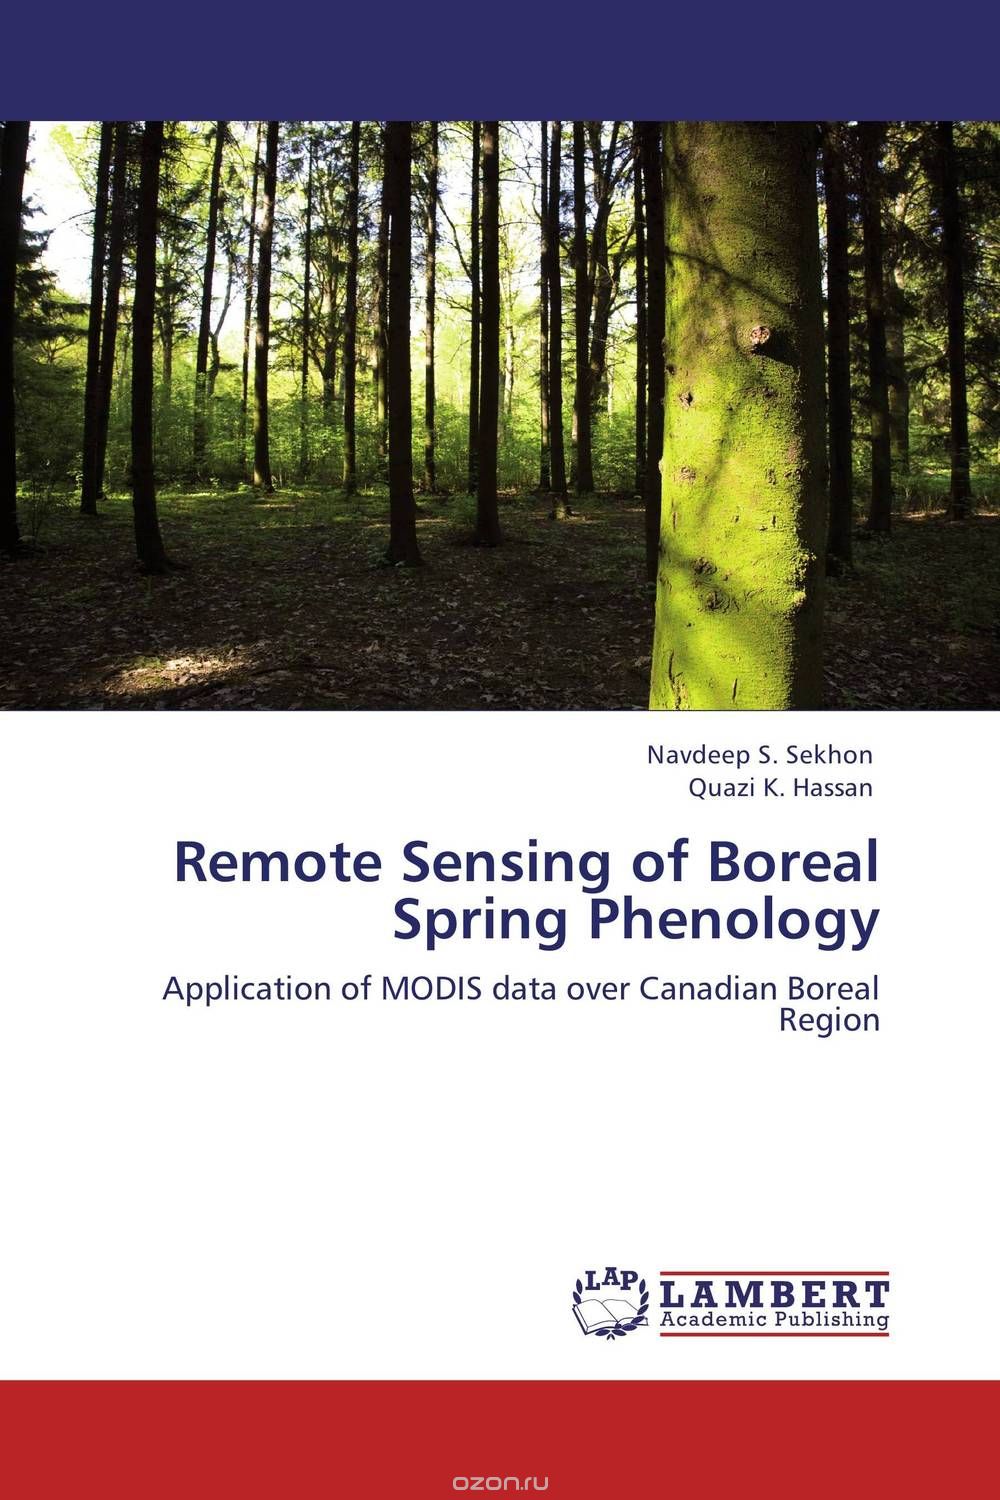 Remote Sensing of Boreal Spring Phenology